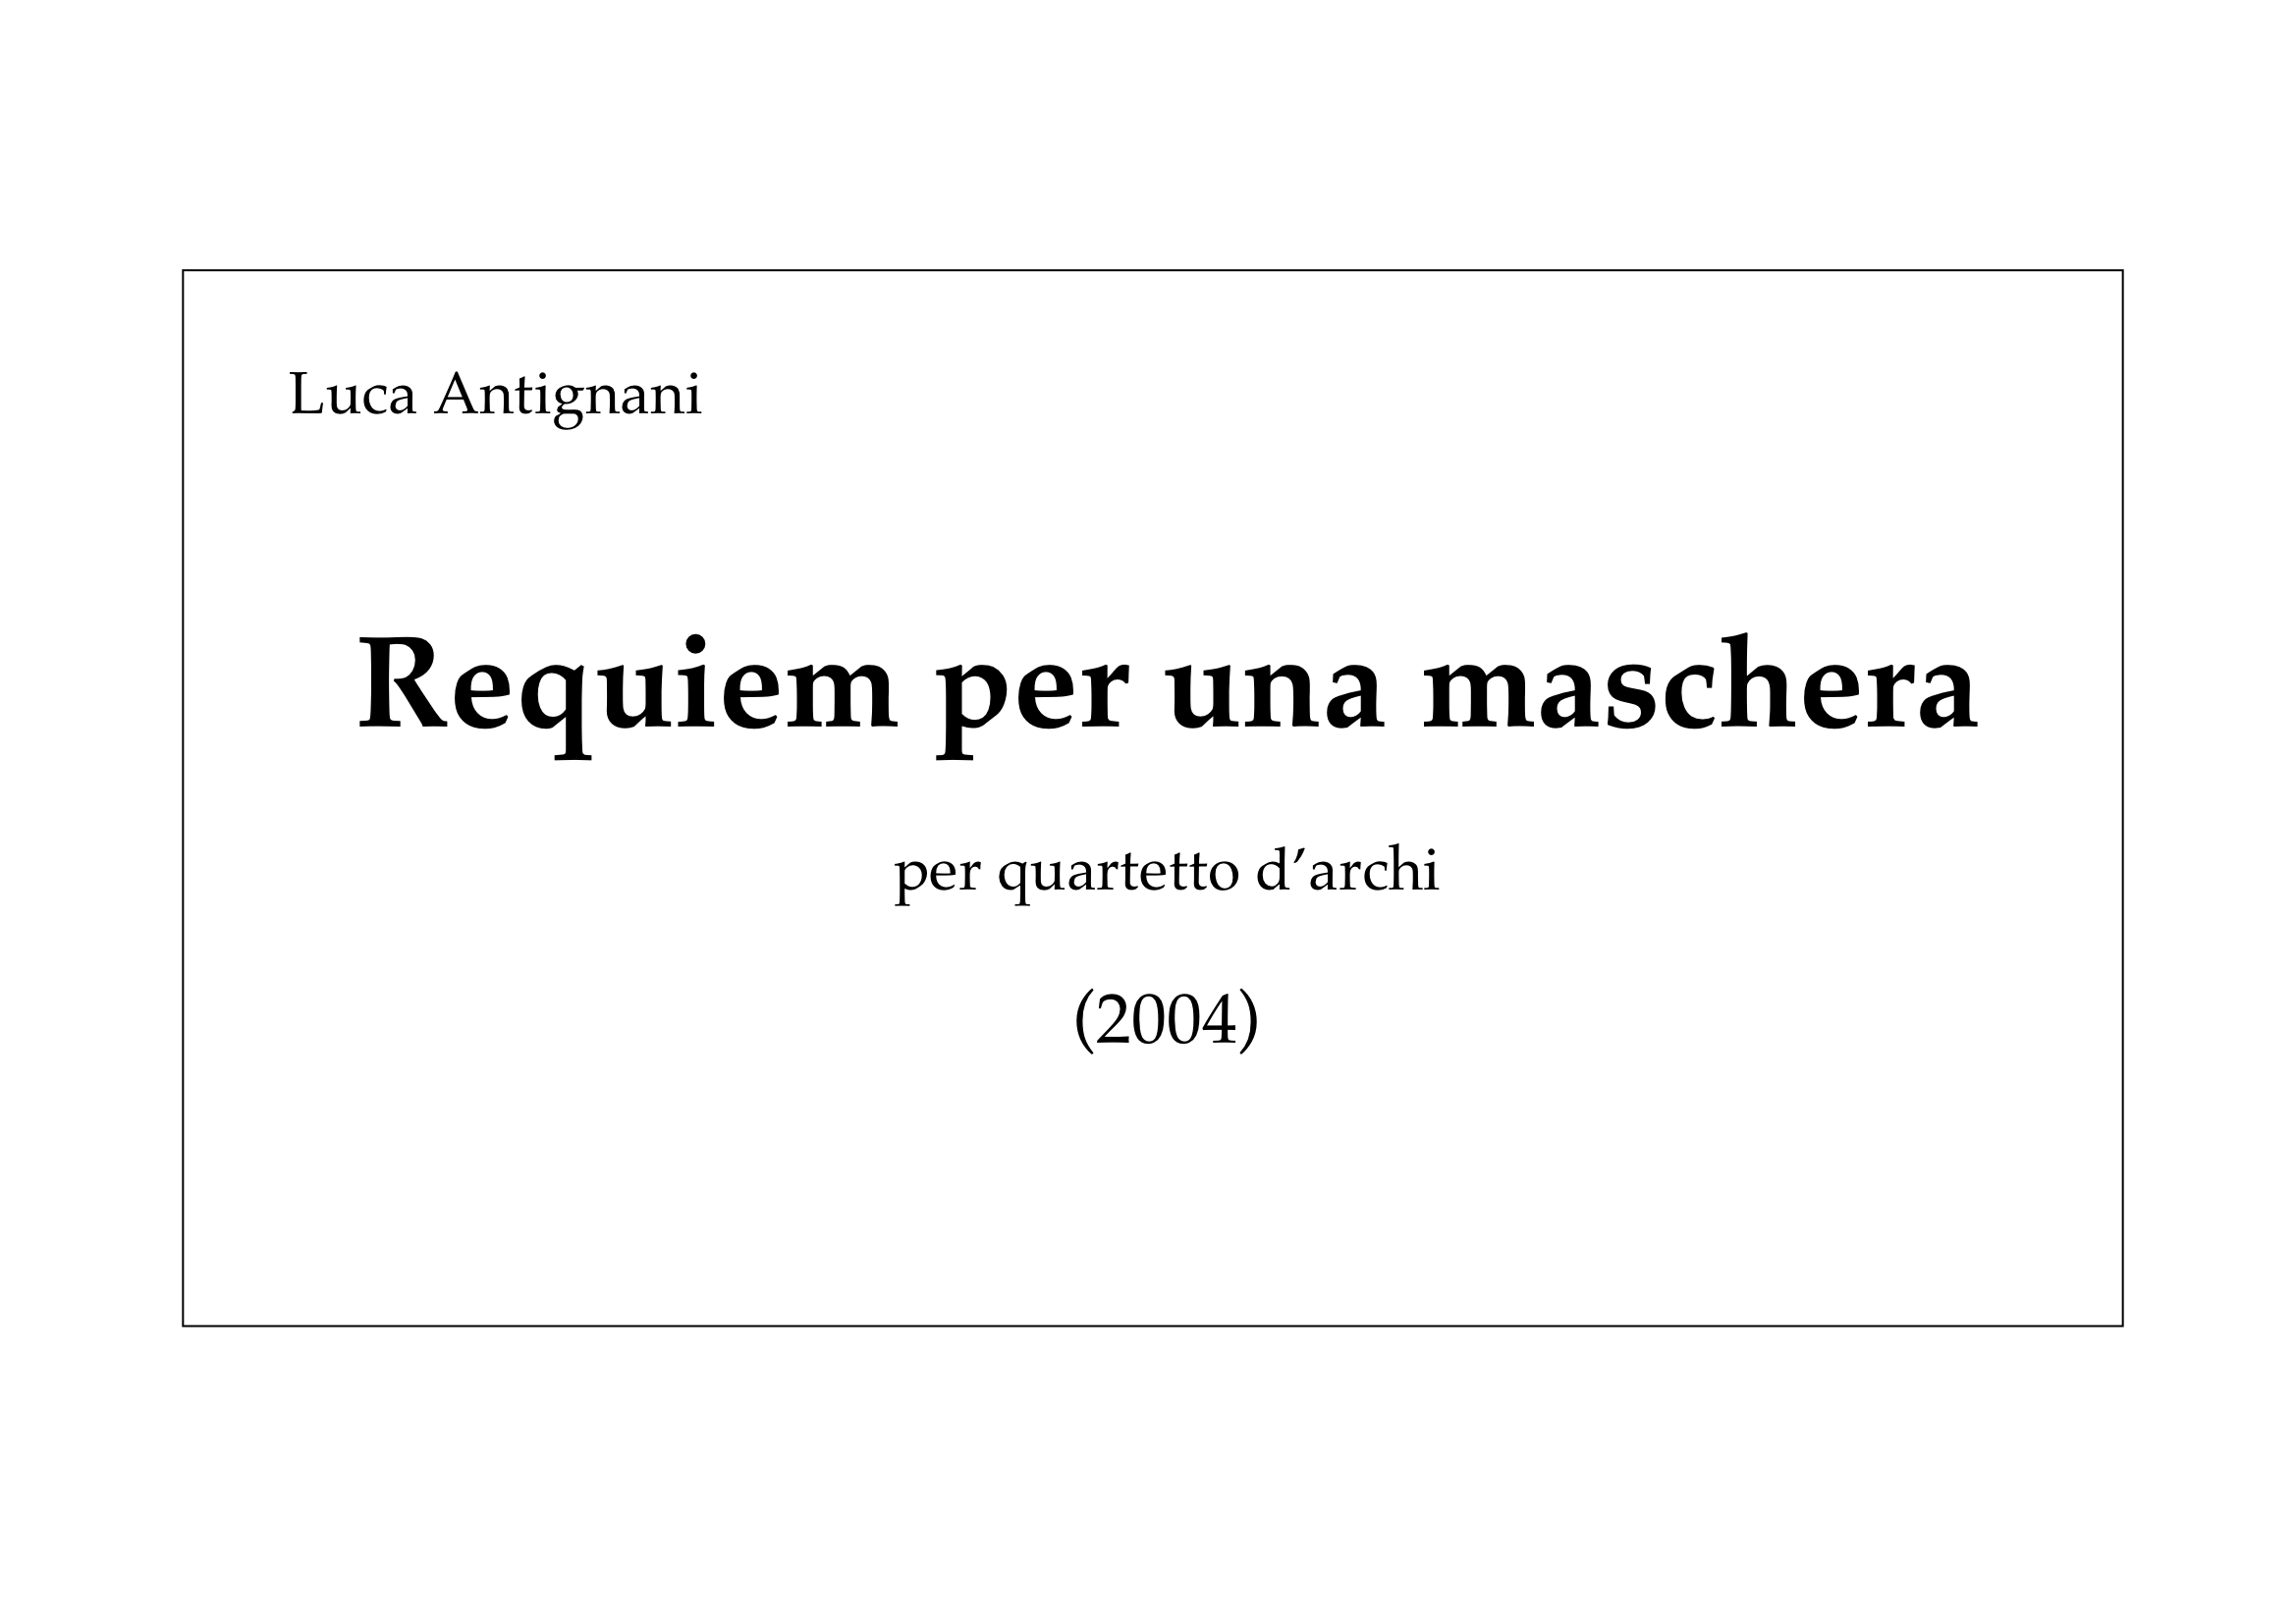 Requiem per una maschera_Antignani 1